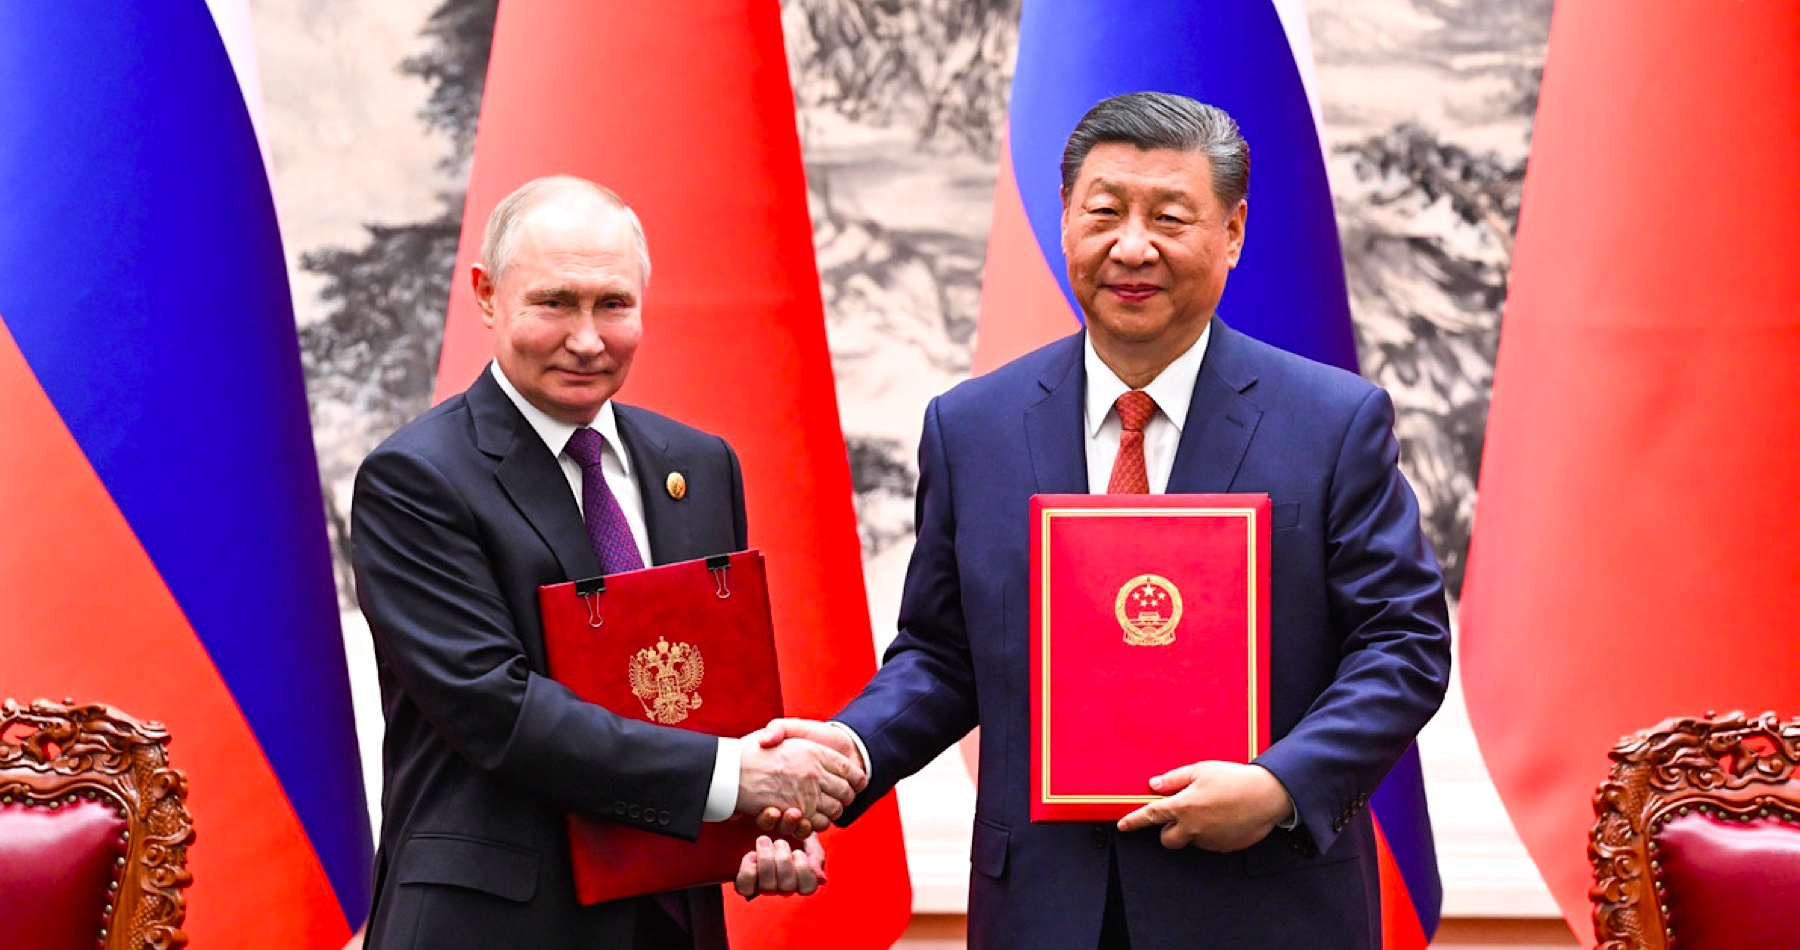 Čínske vedenie vníma Rusko ako priateľa a partnera. USA sa desia pred realitou nového multipolárneho usporiadania a poučujú Čínu, že keď podporuje Rusko, nemôže zlepšovať vzťahy so Západom 